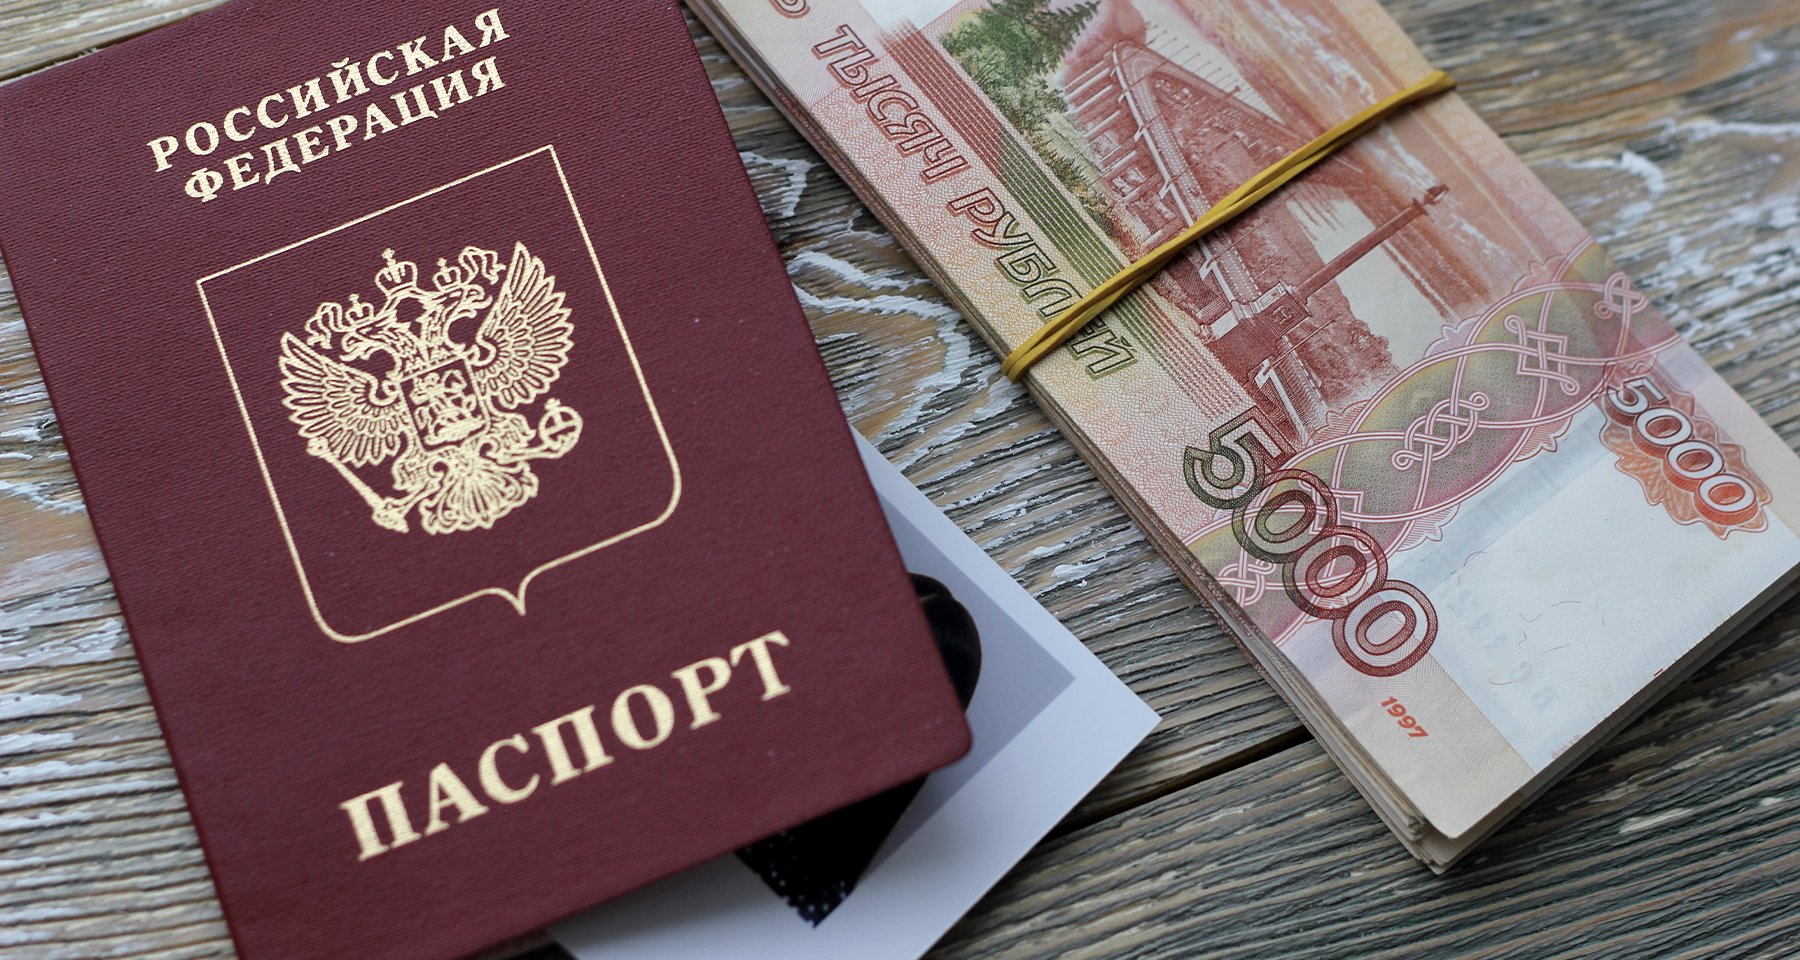 Пошаговое руководство по получению займа с использованием только паспорта